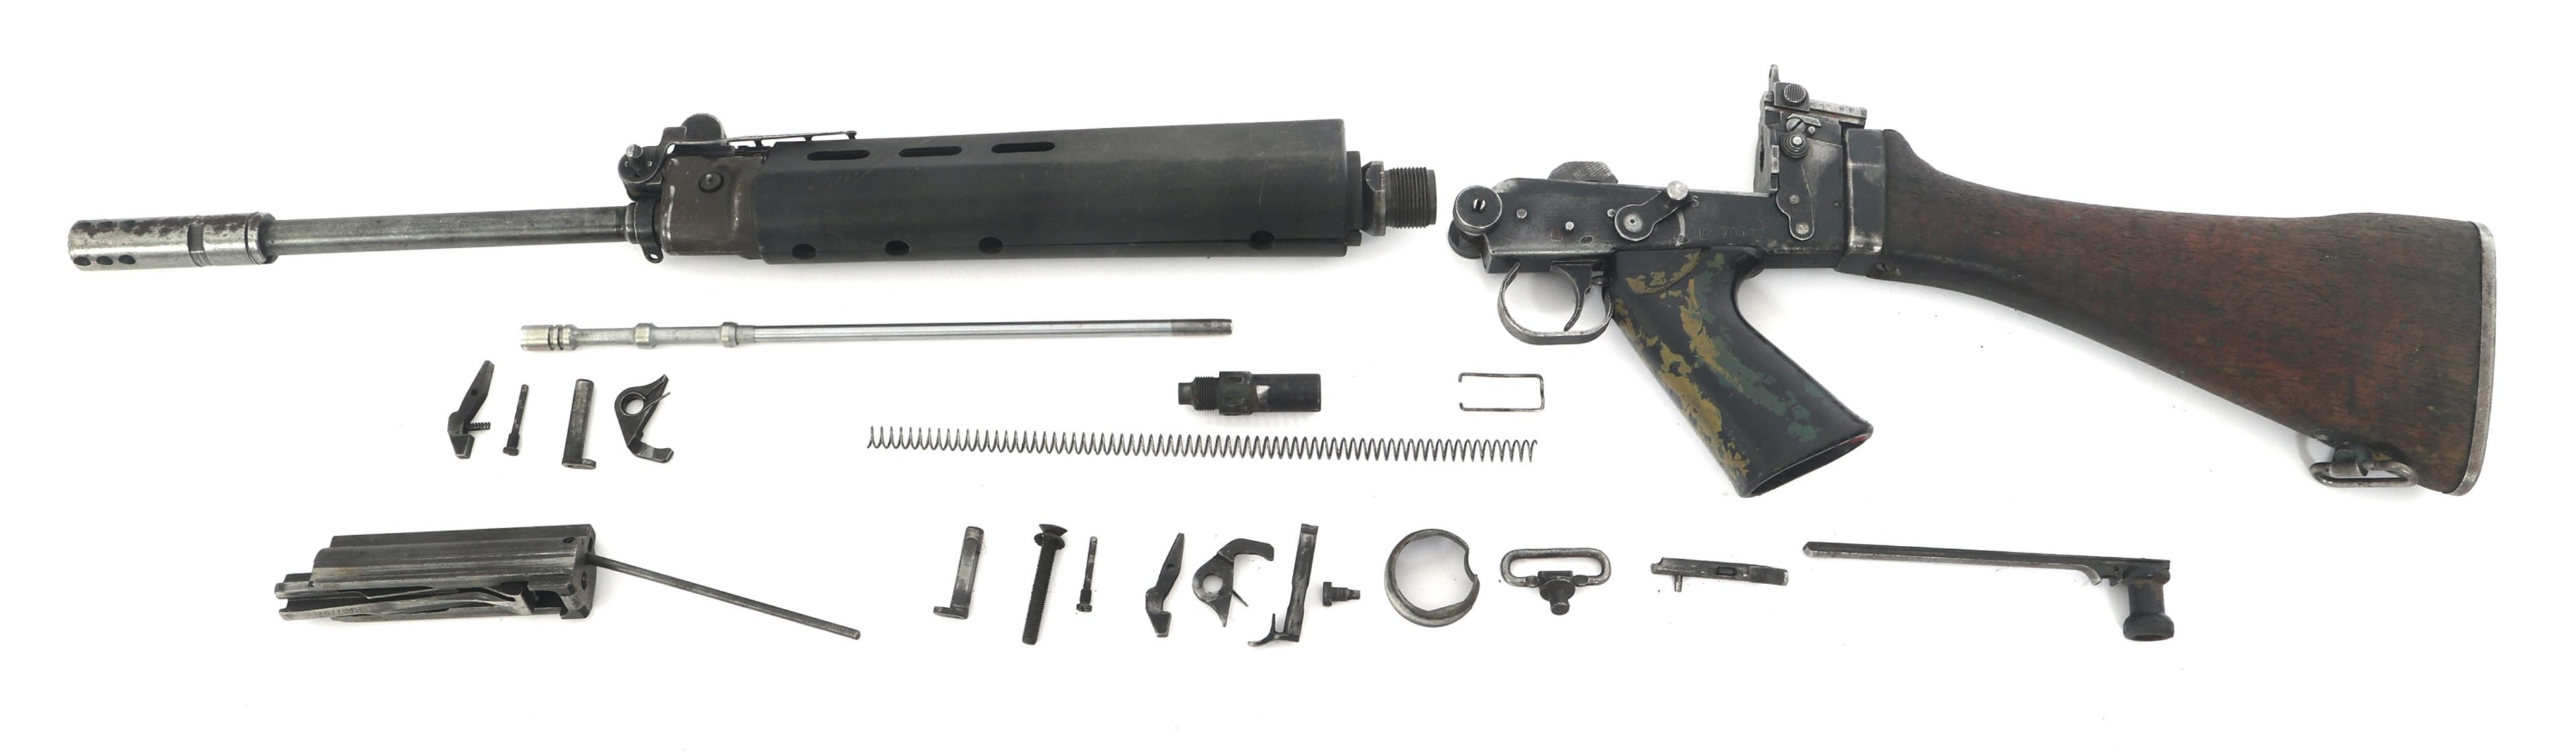 RHODESIAN FN FAL 7.62mm MACHINE GUN PARTS